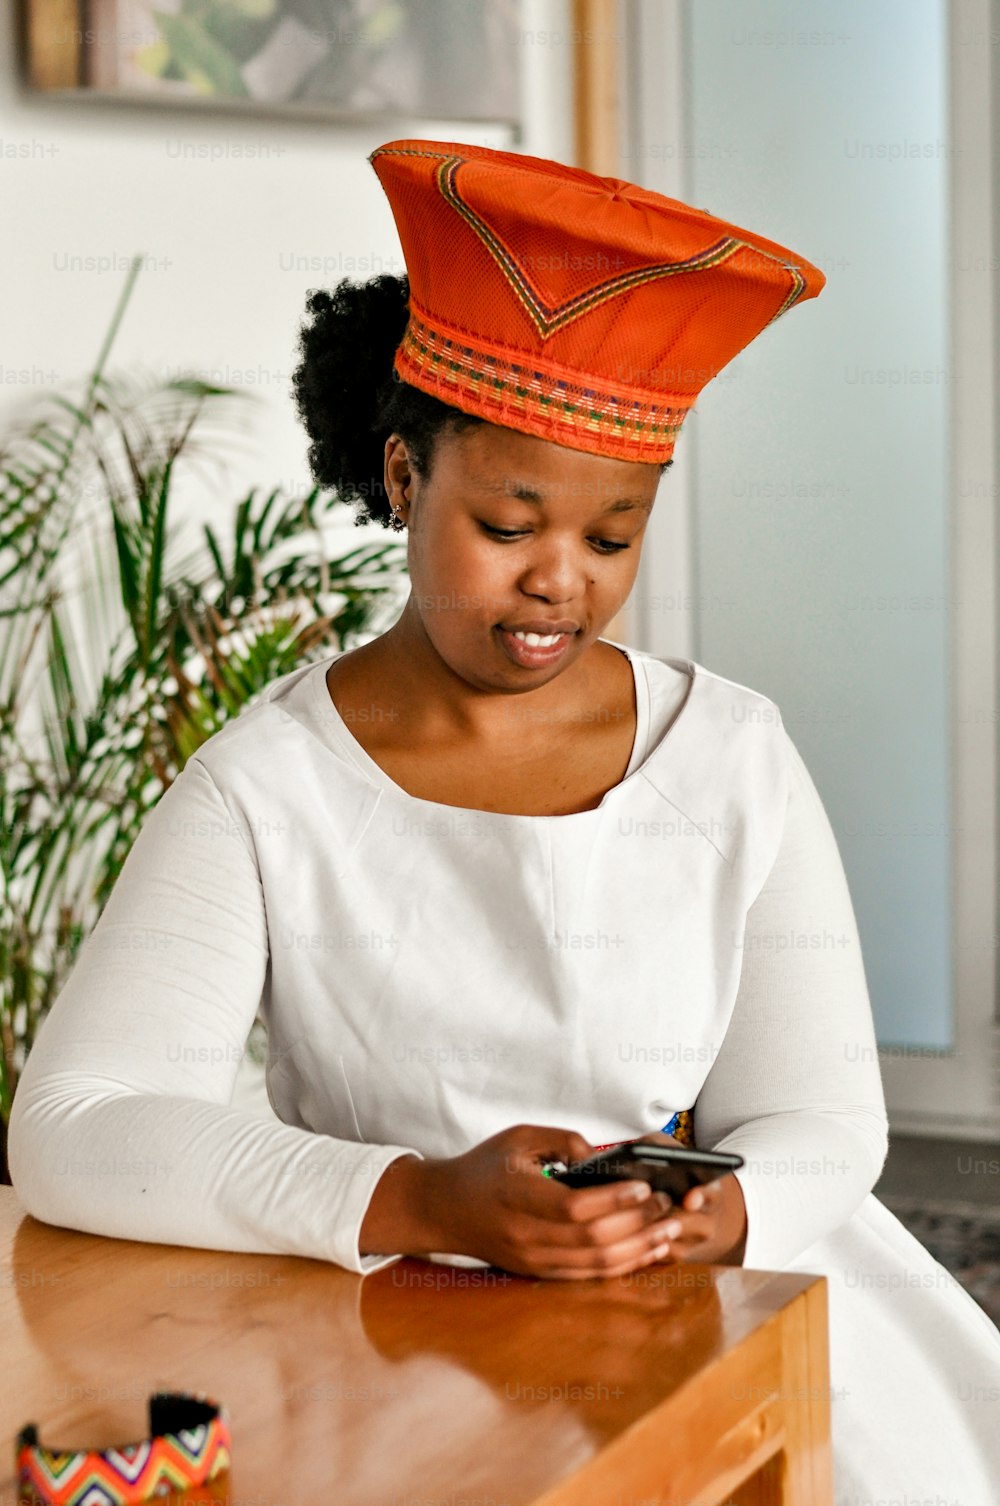 Eine Frau sitzt an einem Tisch und schaut auf ihr Handy